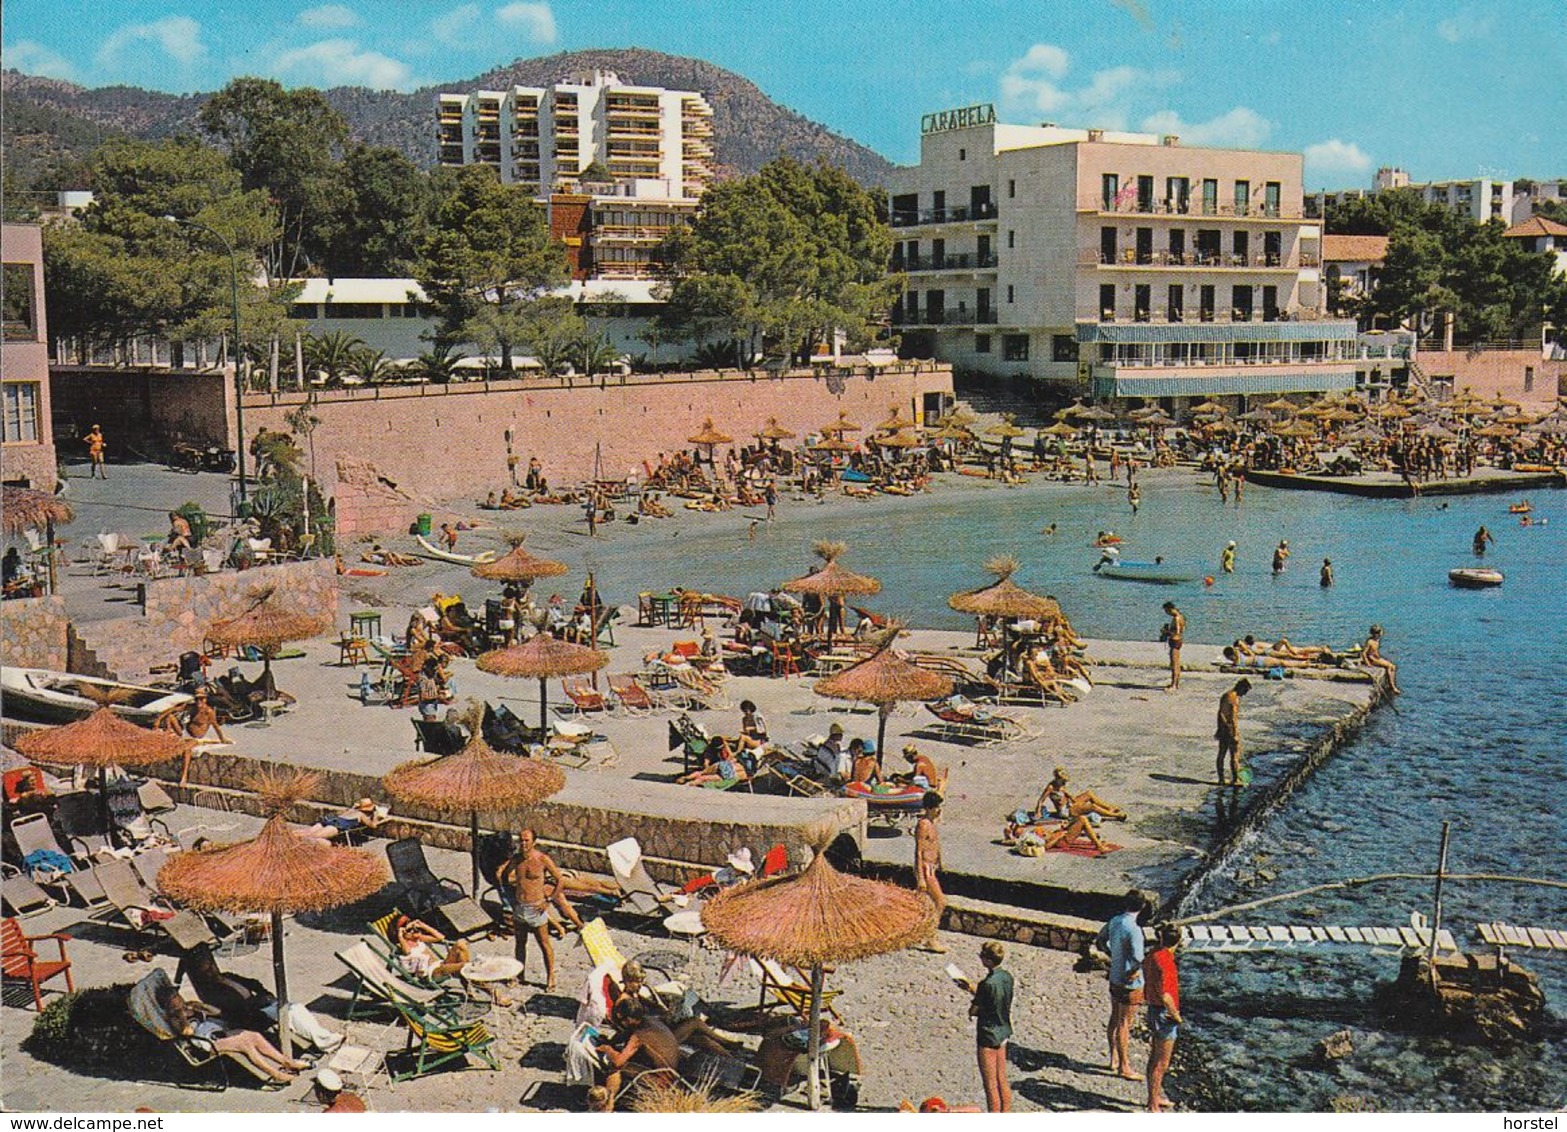 Spanien - Mallorca - Paguera - Hotel Carabela - Beach - Strand - Sonnenschirme - Mallorca